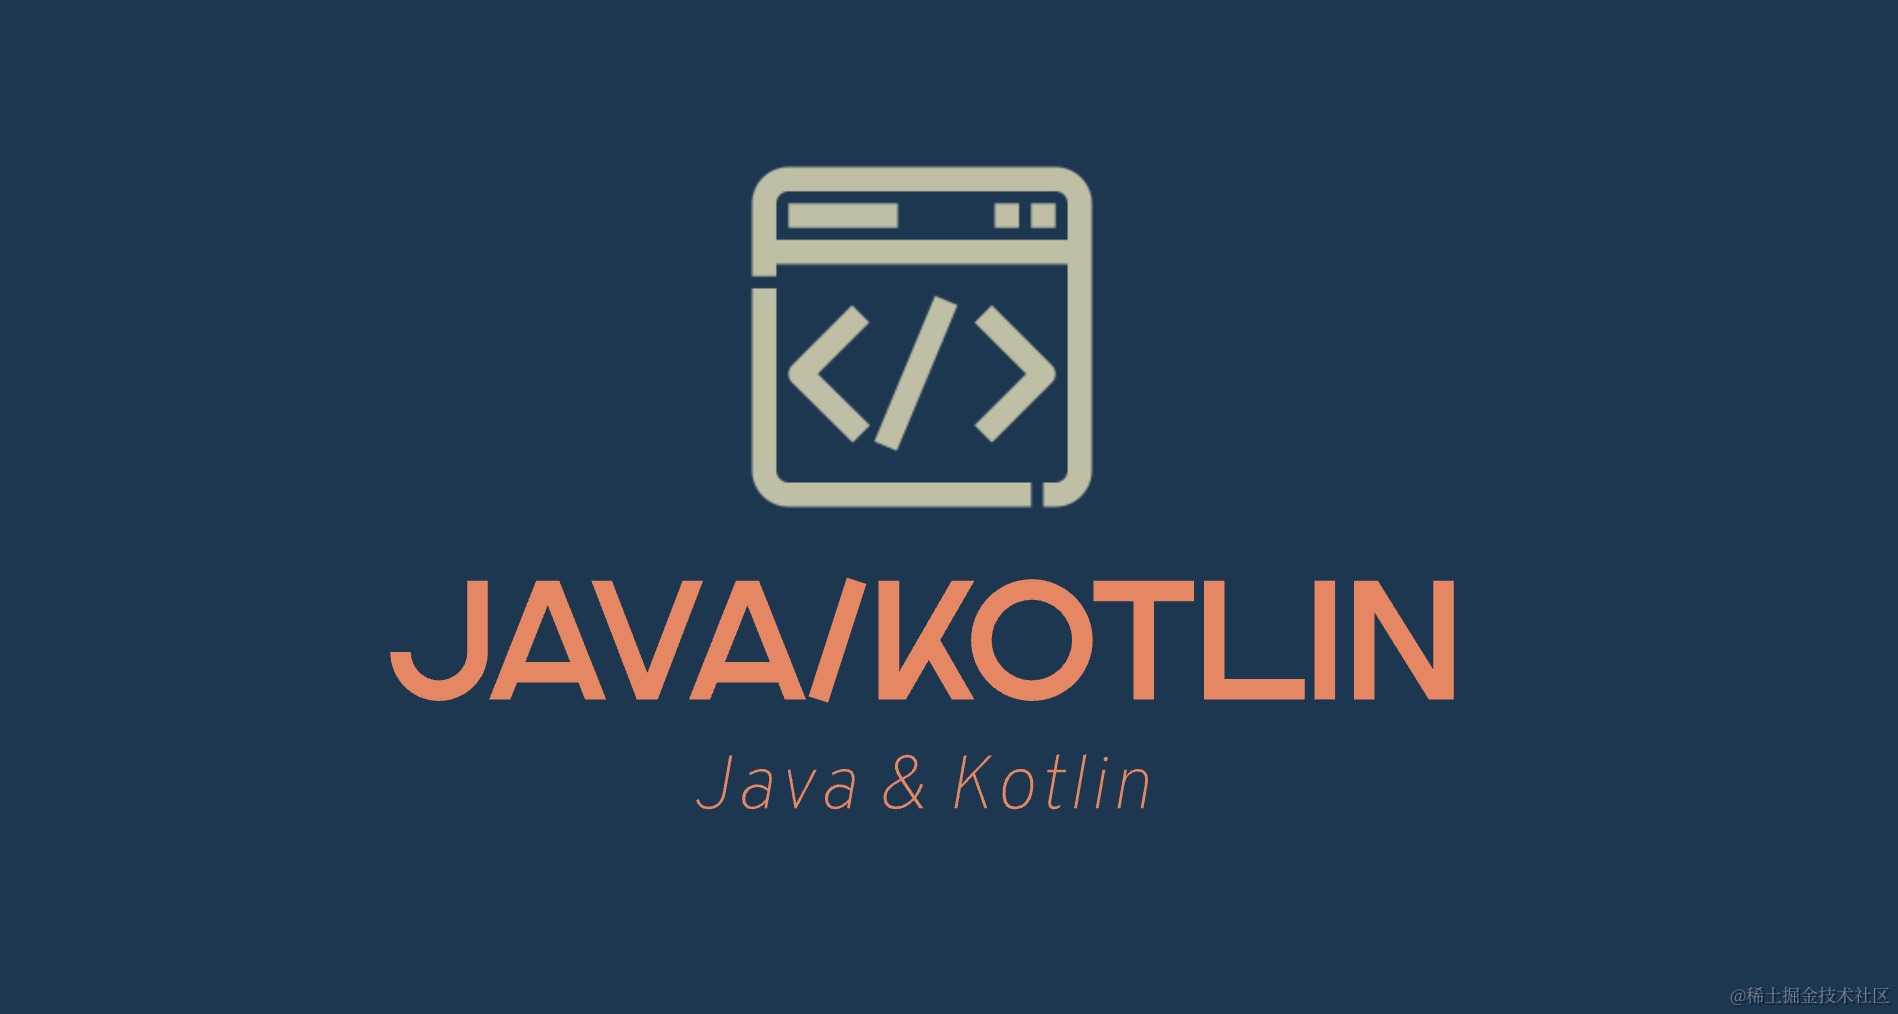 Java/Kotlin